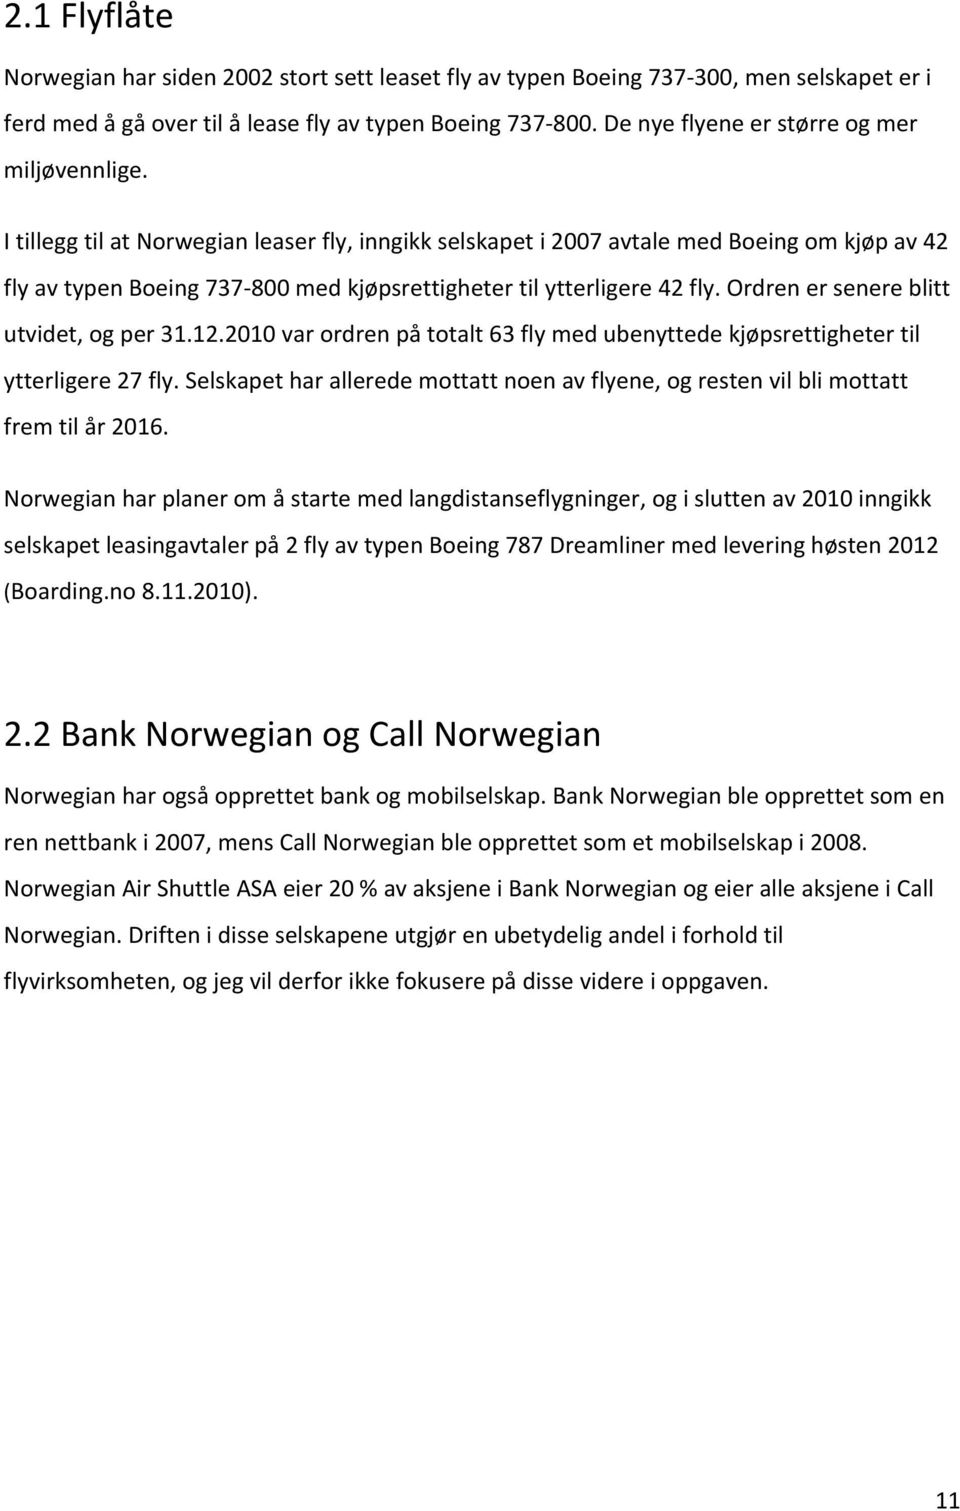 I tillegg til at Norwegian leaser fly, inngikk selskapet i 2007 avtale med Boeing om kjøp av 42 fly av typen Boeing 737 800 med kjøpsrettigheter til ytterligere 42 fly.